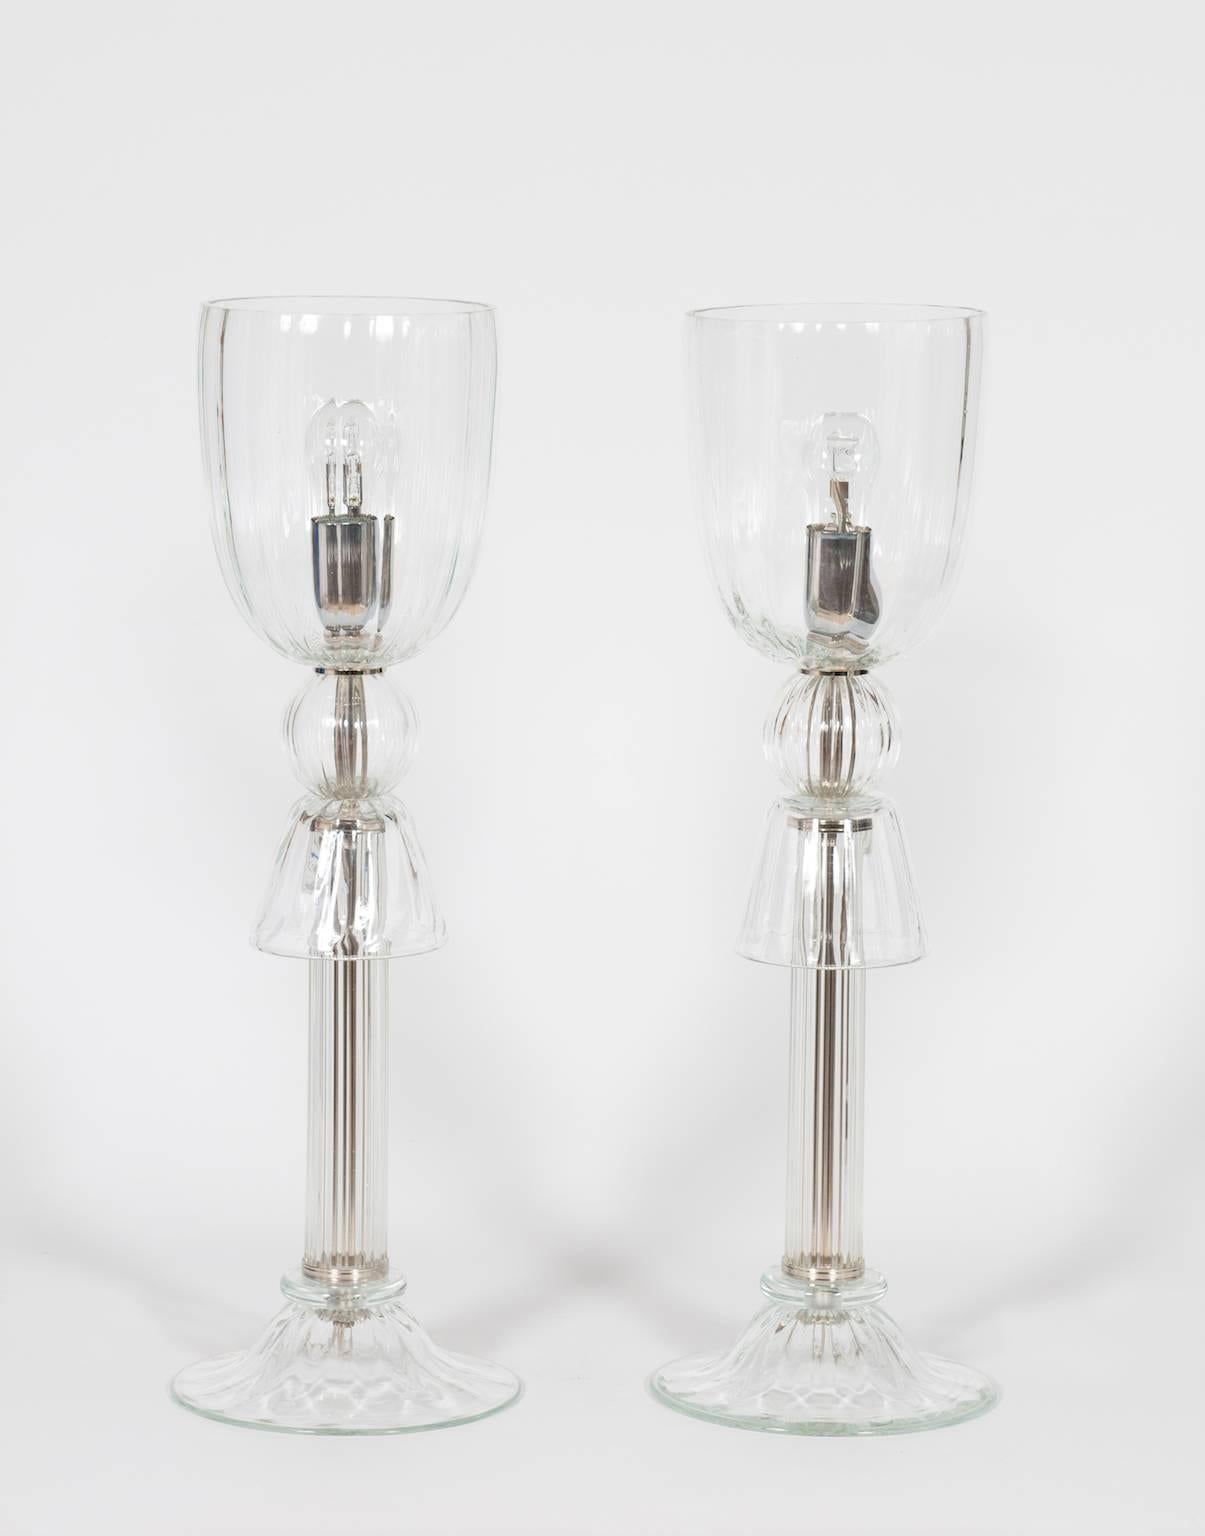 Paar italienische venezianische Tischlampen aus Muranoglas, bestehend aus transparenten Muranoglasteilen, die von einem Chromrahmen getragen werden, in sehr gutem Originalzustand. Seine Herstellung wird auf die 1990er Jahre datiert.
Das Paar